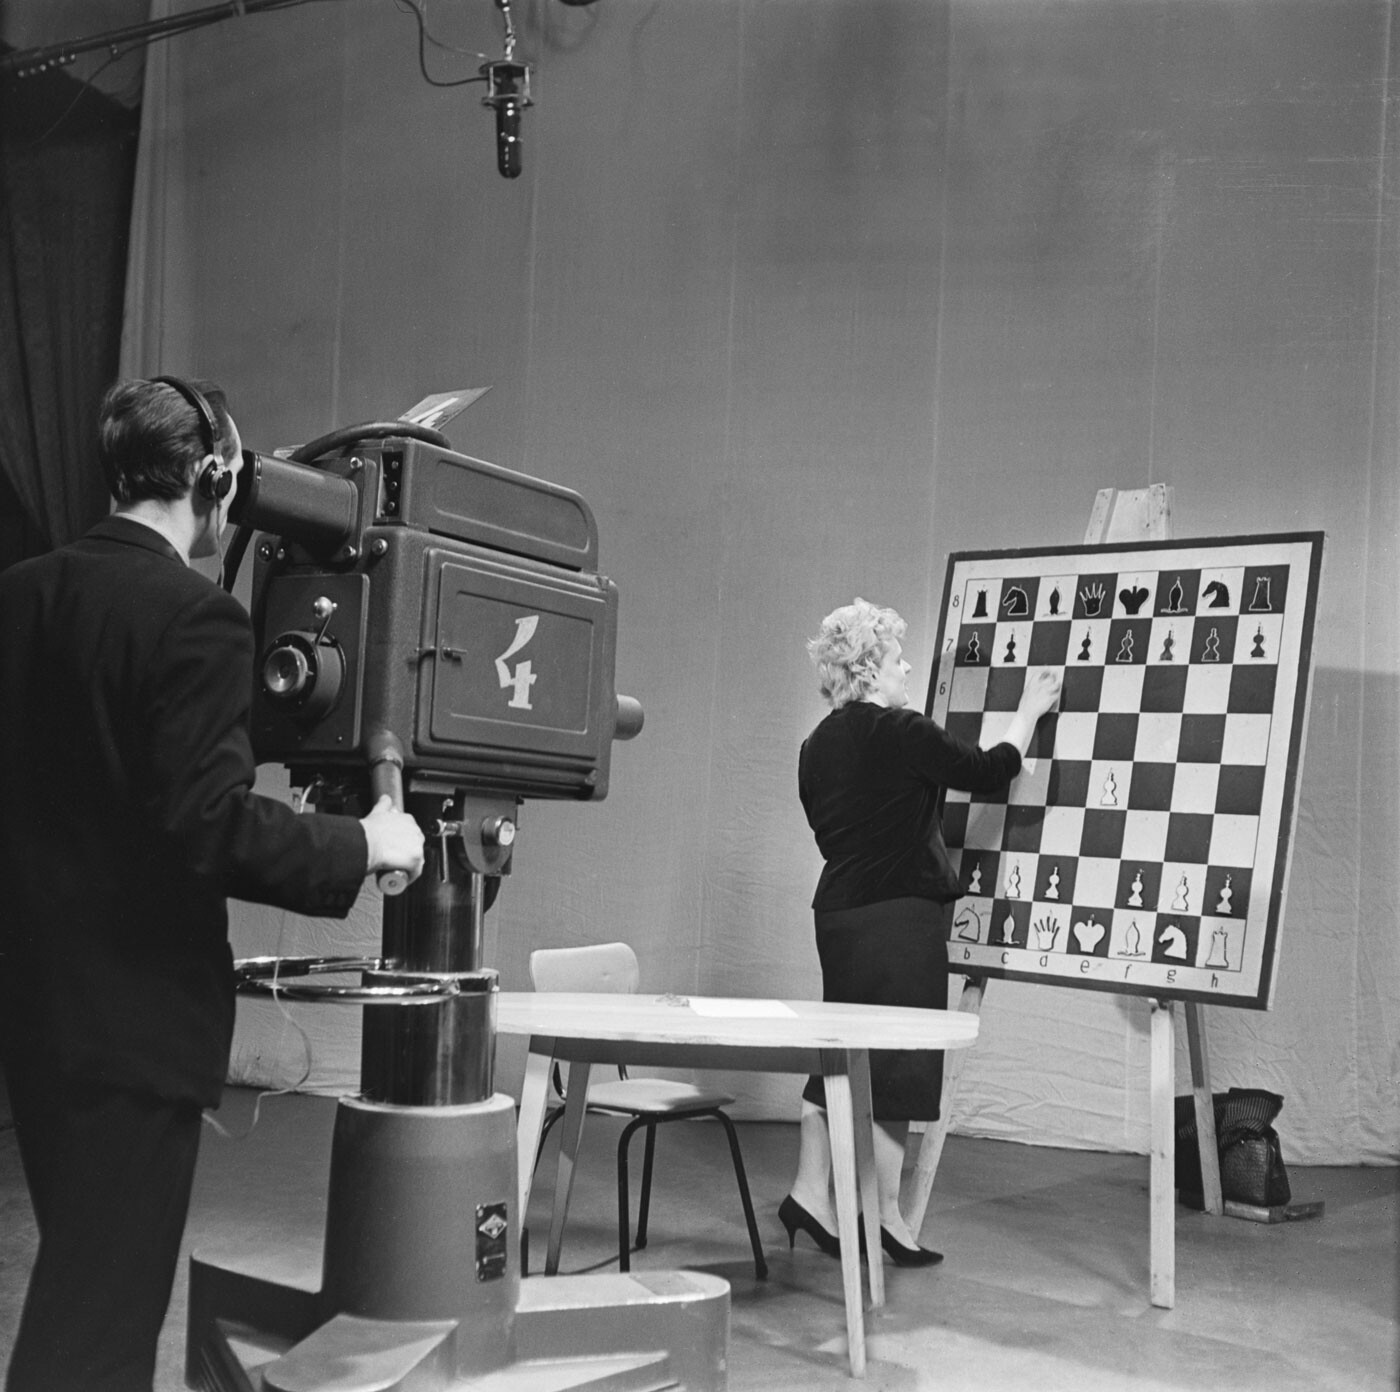 Una mujer analiza una partida de ajedrez durante un programa de televisión, 1964